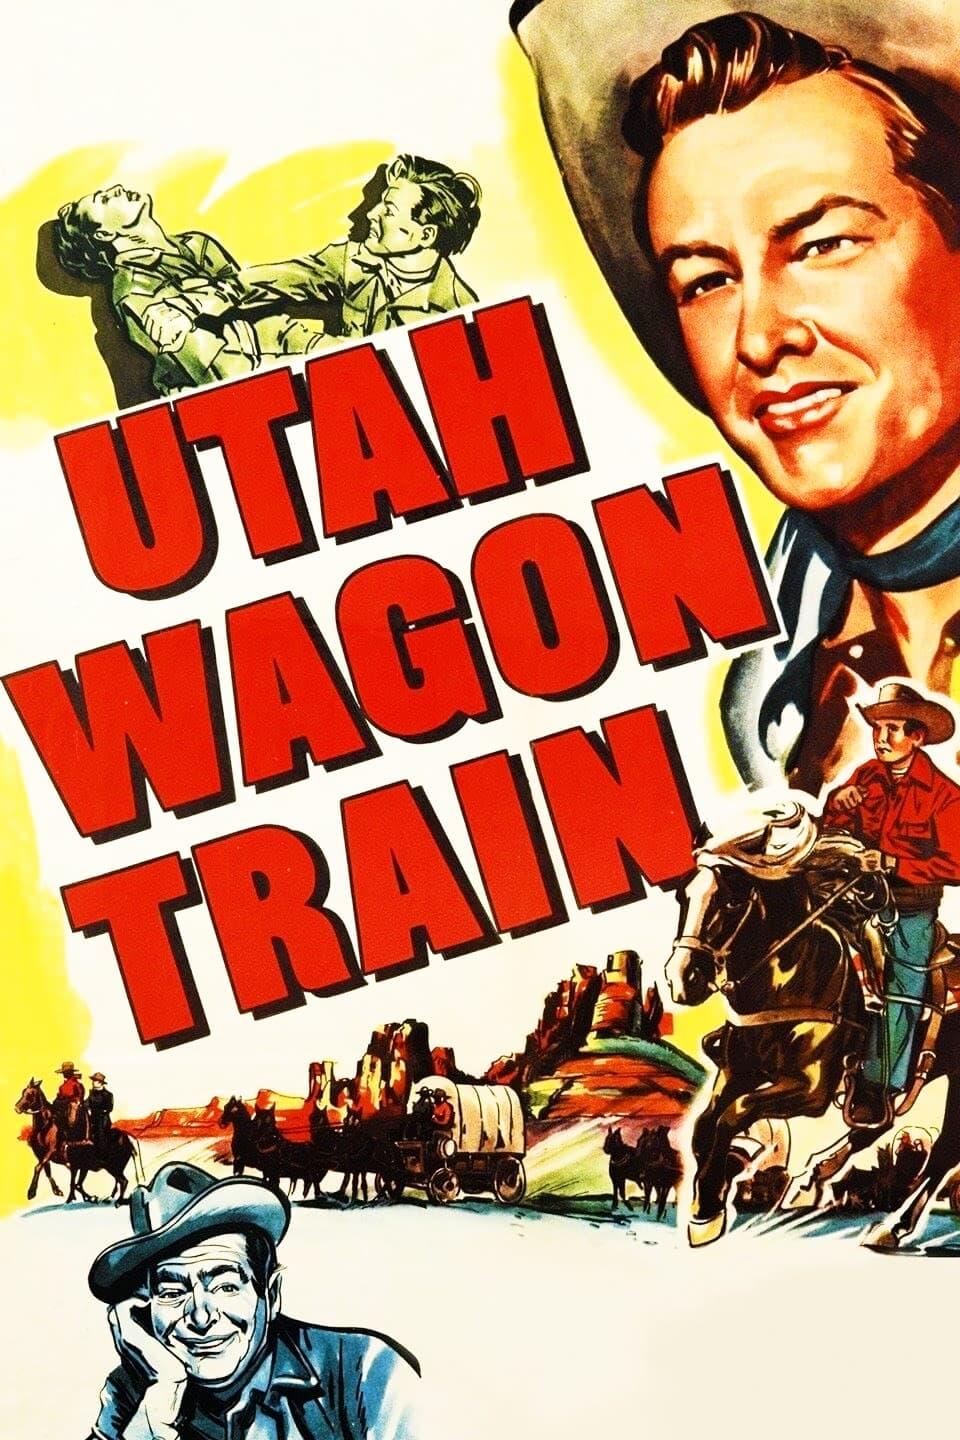 Utah Wagon Train poster